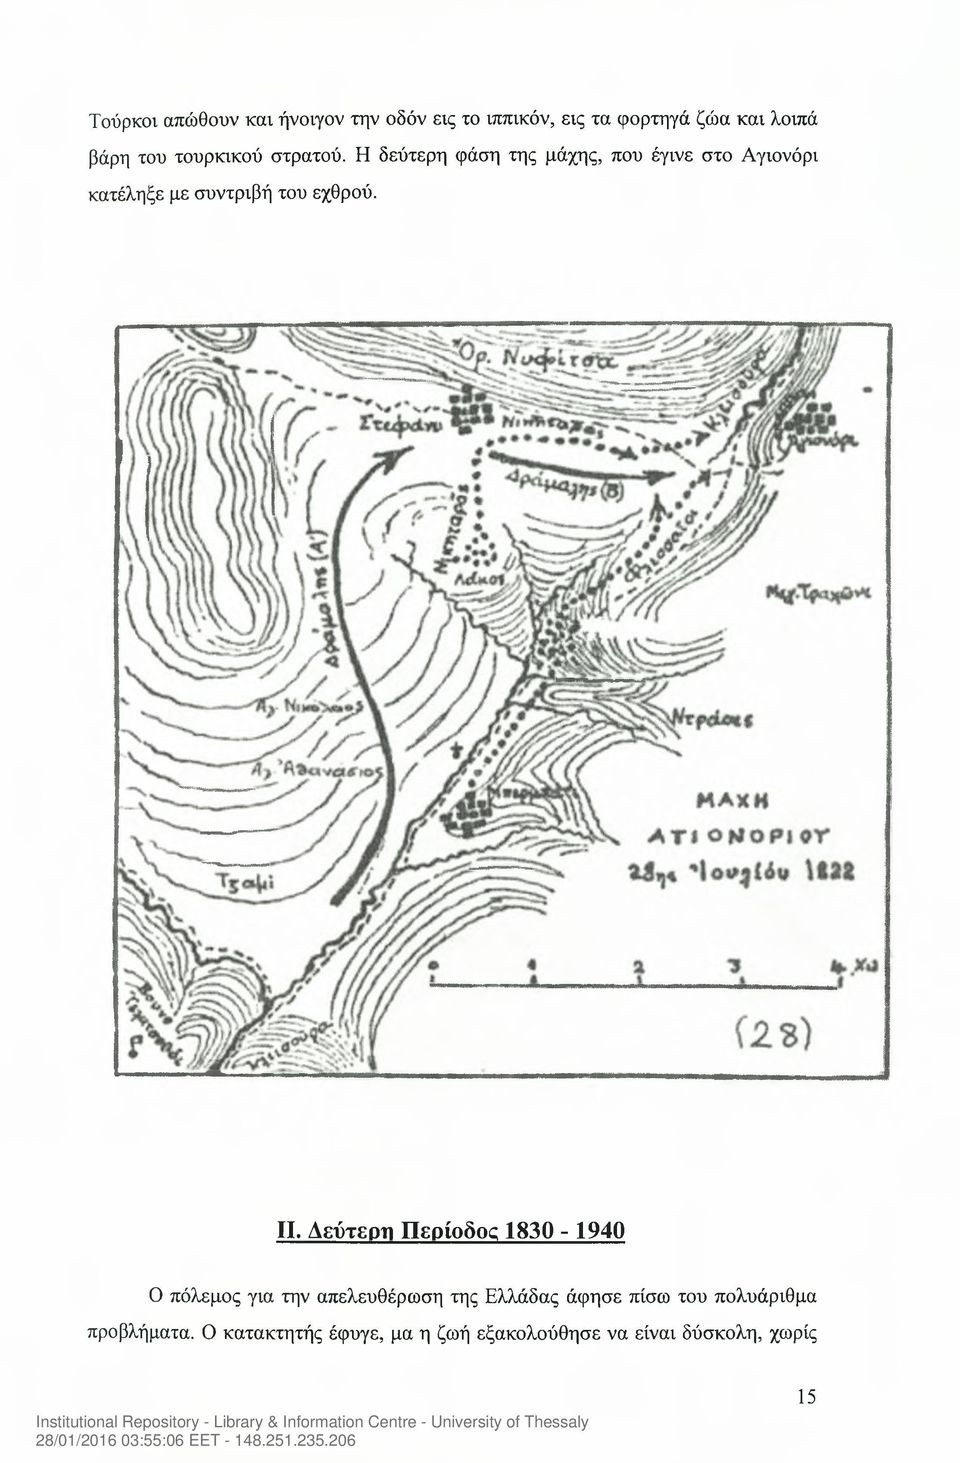 Η δεύτερη φάση της μάχης, που έγινε στο Αγιονόρι κατέληξε με συντριβή του εχθρού. II.